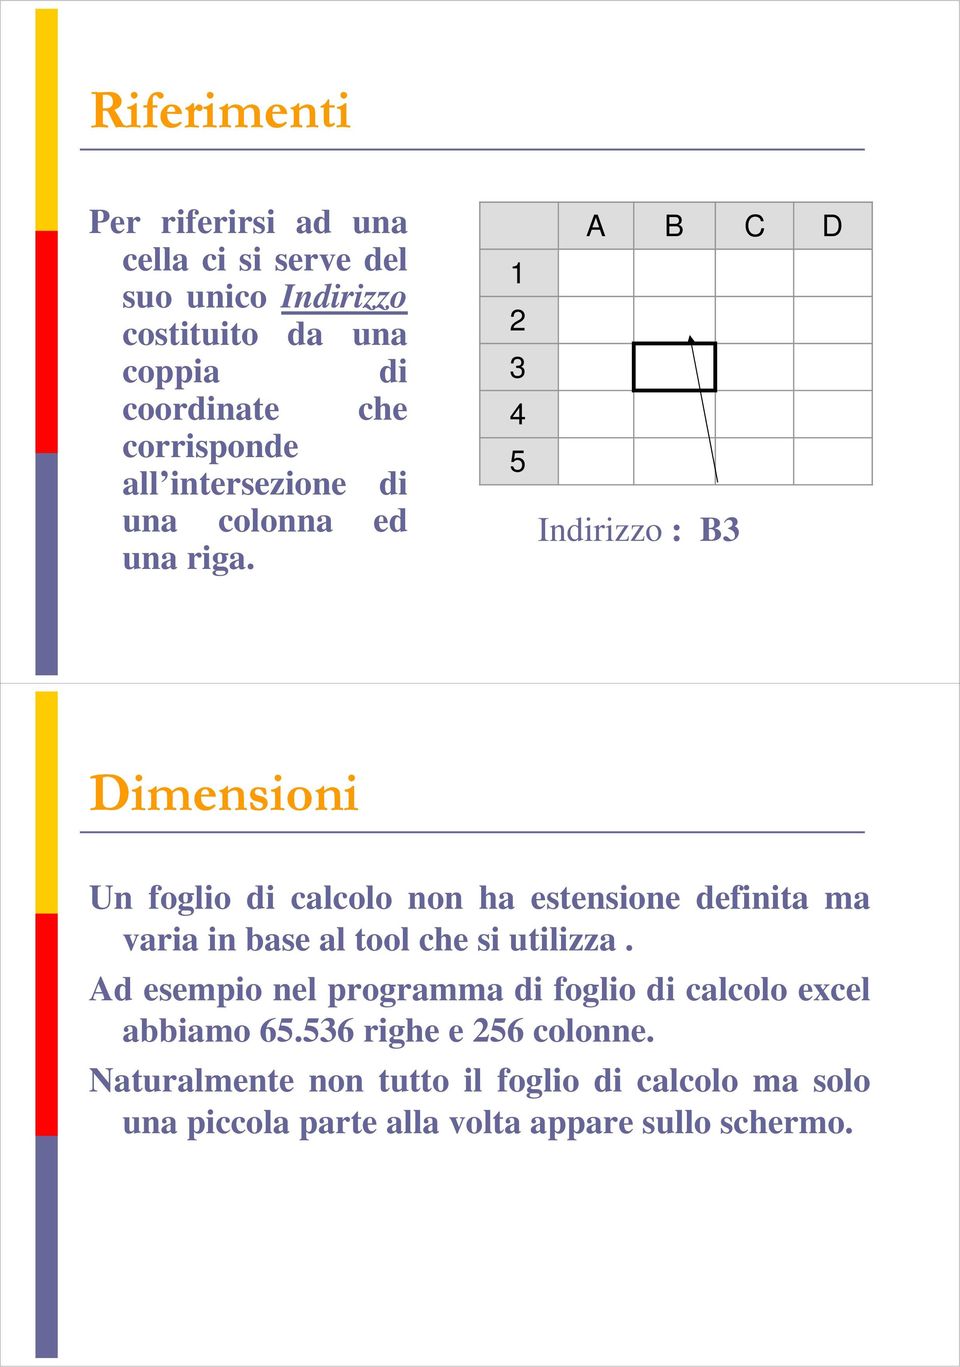 1 2 3 4 5 A B C Indirizzo : B3 D Dimensioni Un foglio di calcolo non ha estensione definita ma varia in base al tool che si